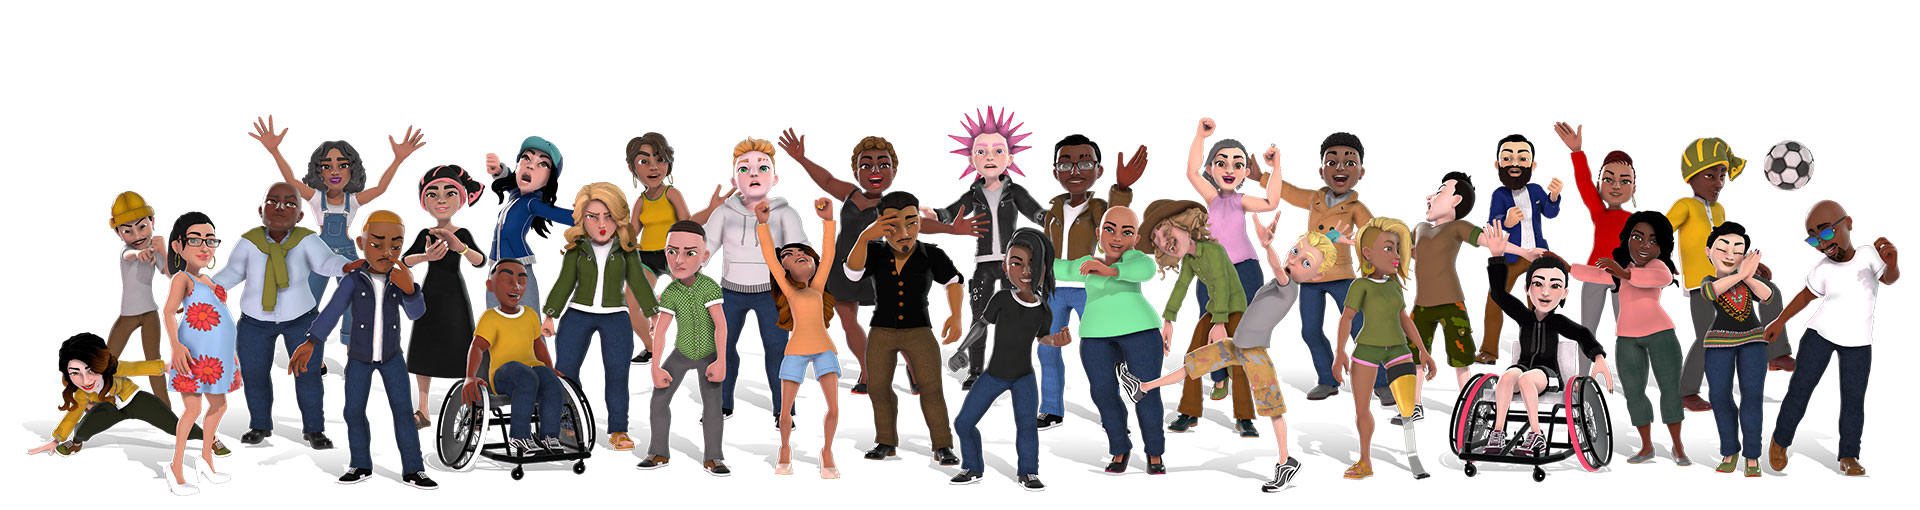 Awatary Xbox przedstawiające zróżnicowaną grupę osób w różnych strojach